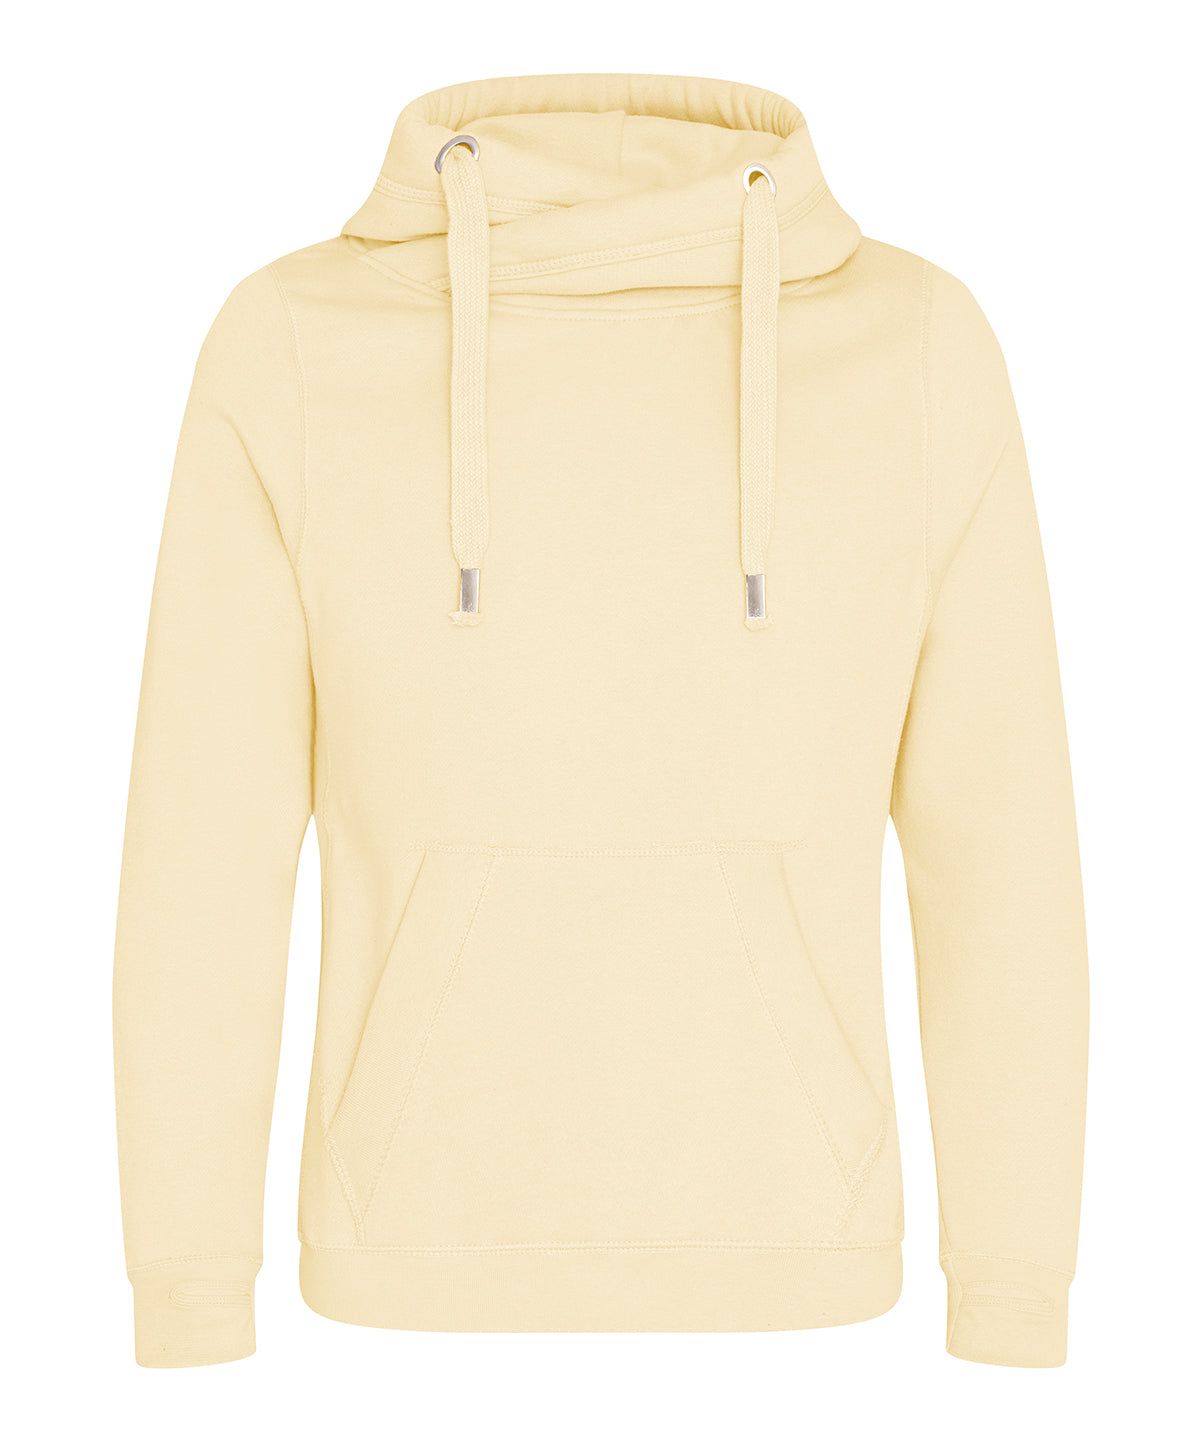 Personalised Hoodies - Dark Grey AWDis Just Hoods Cross neck hoodie